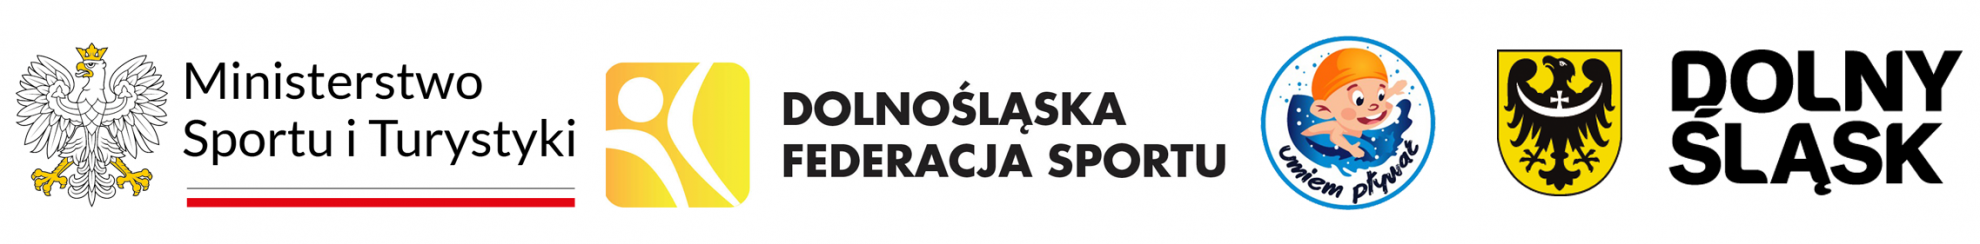 Logotypy: Ministerstwo Sportu i Turystyki, Dolnośląska Federacja Sportu, Umiem pływać, Dplny Śląsk